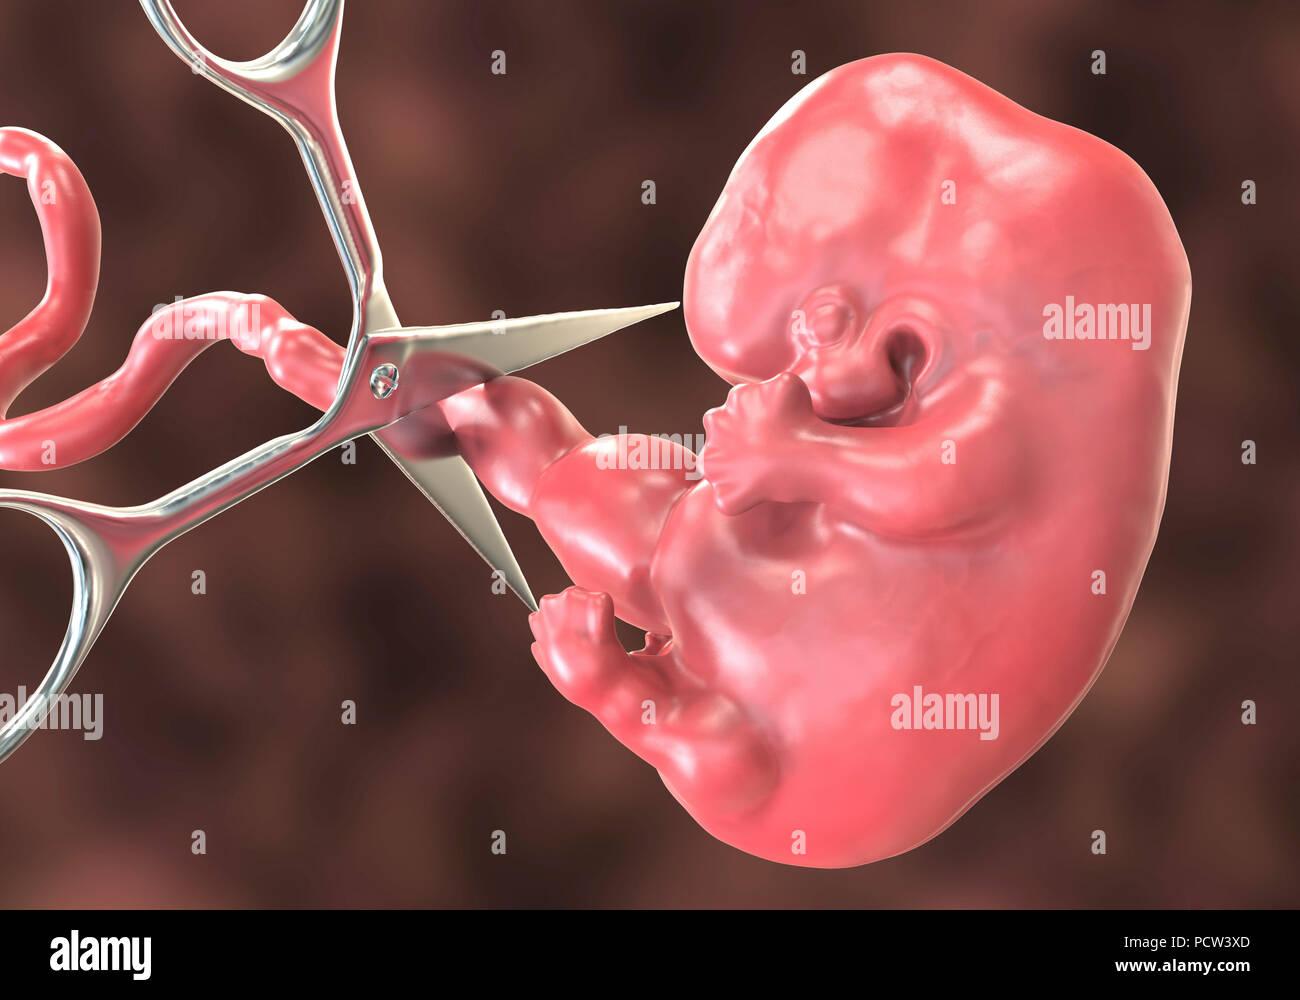 Abtreibung, konzeptionelle Darstellung. Medizinisches instrument Durchtrennen der Nabelschnur zu einem Embryo. Stockfoto